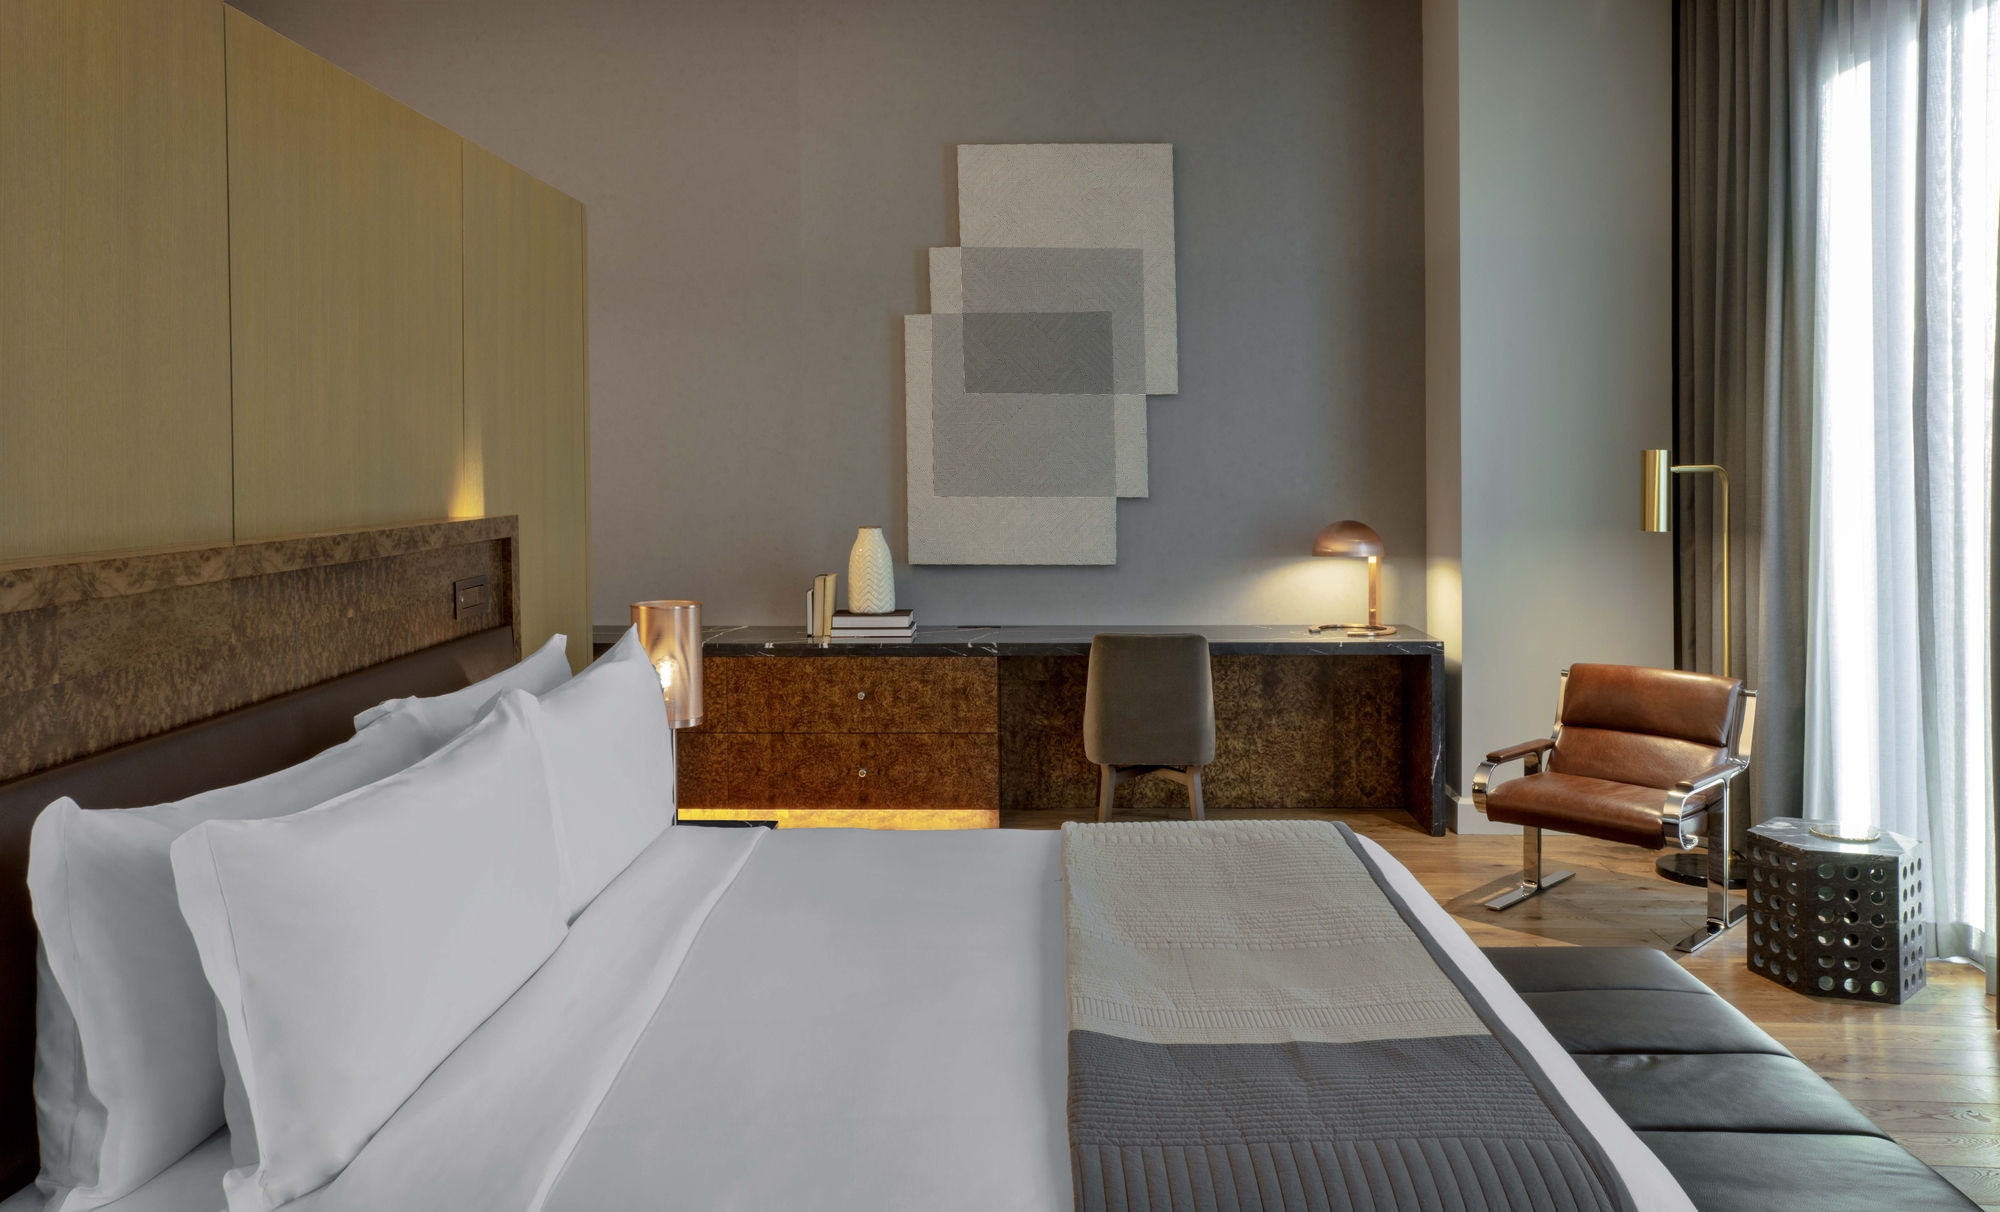 图片[20]|纳什维尔约瑟夫酒店|ART-Arrakis | 建筑室内设计的创新与灵感